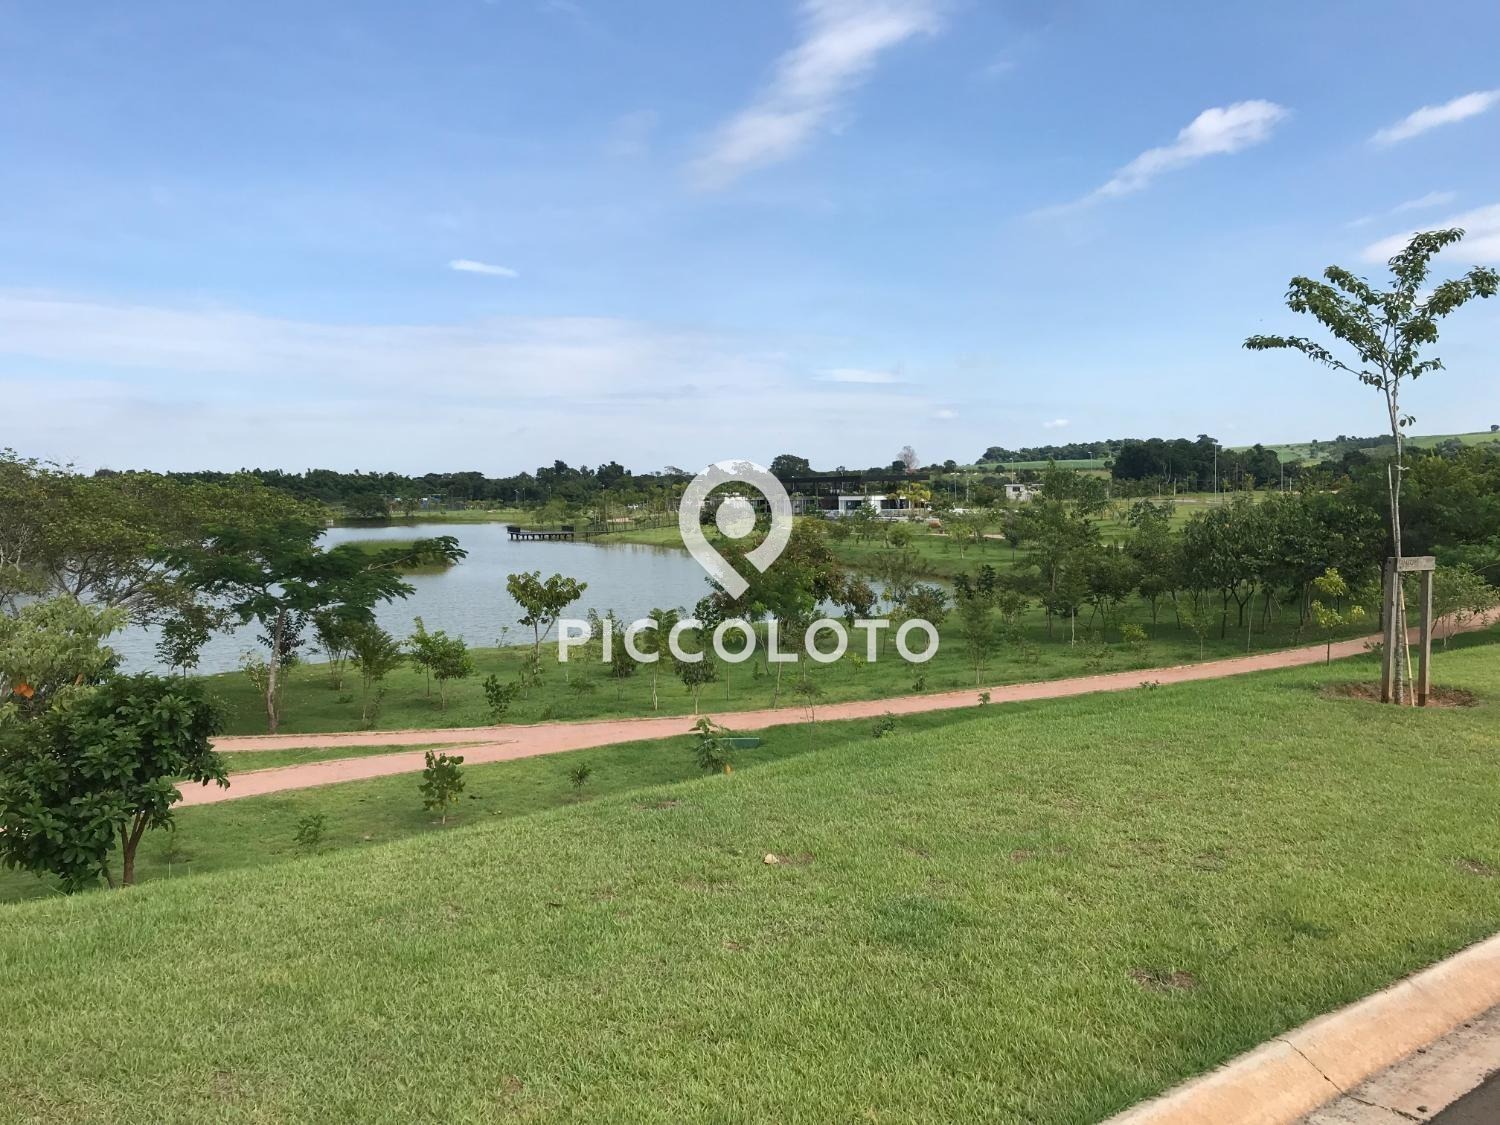 Piccoloto -Casa à venda no Condomínio Fazenda Duas Marias em Jaguariúna